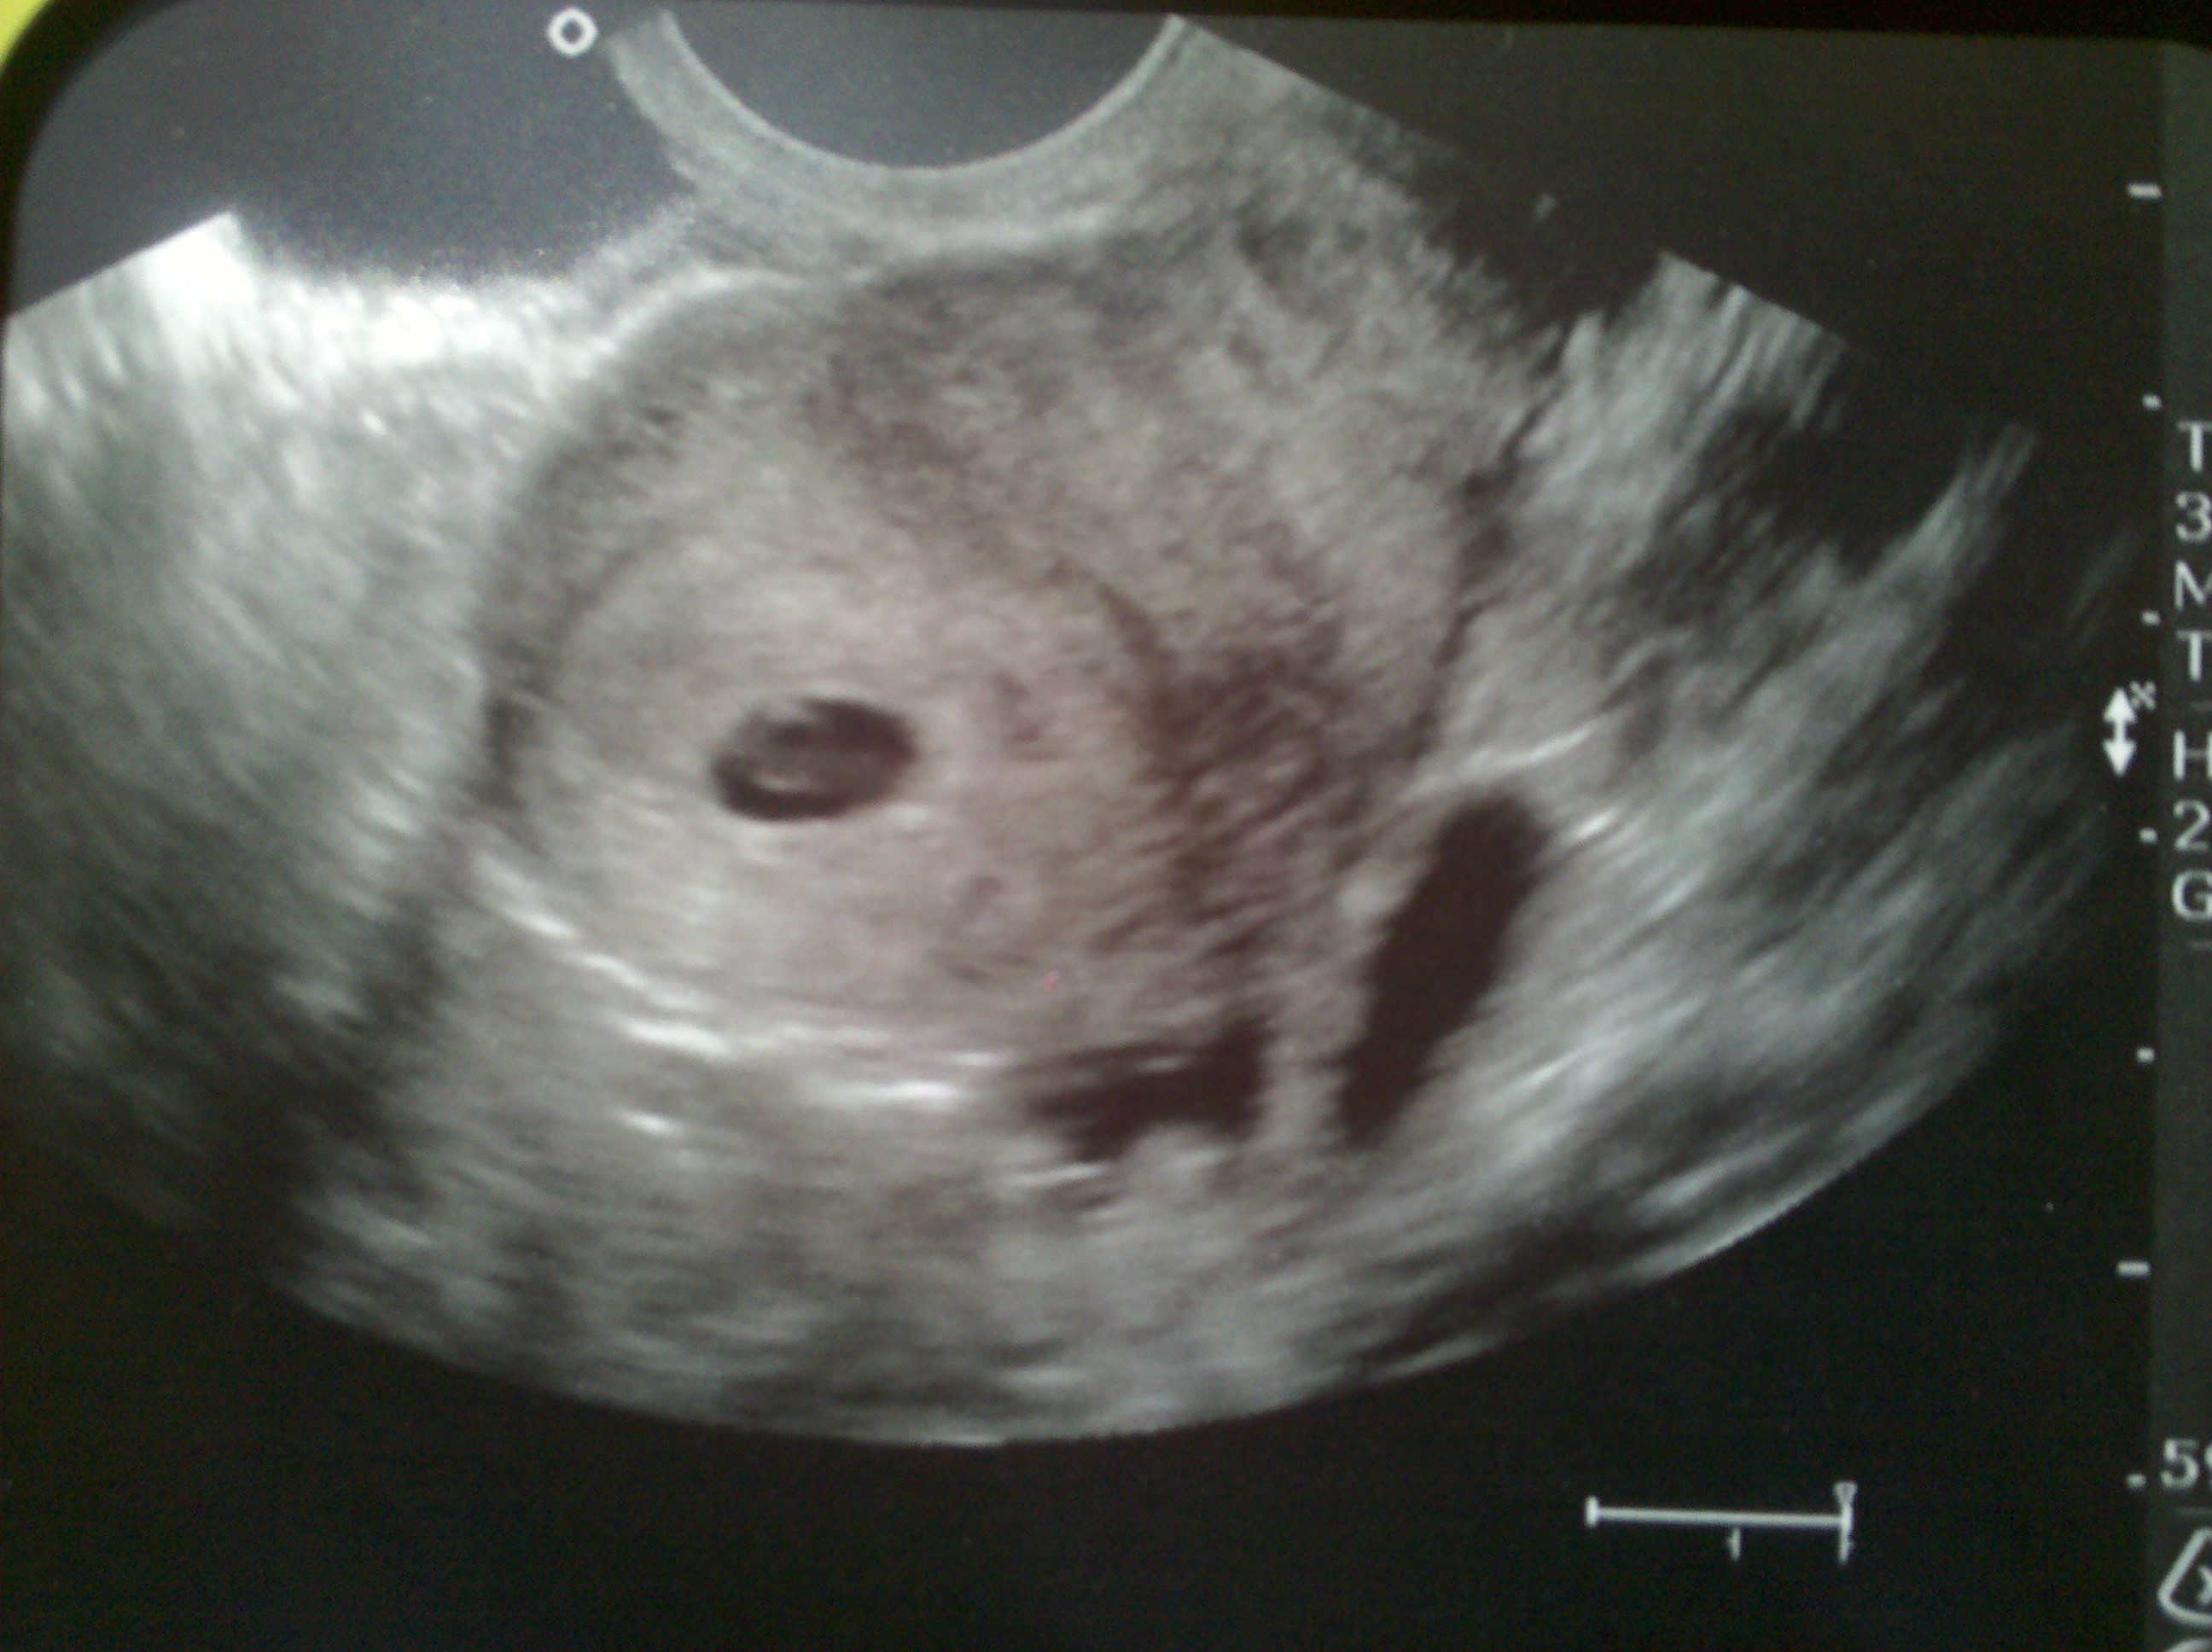 Плод сроком 4 недели. 3 Недели беременности фото плода на УЗИ. УЗИ две недели беременности. УЗИ 7 недель беременности.